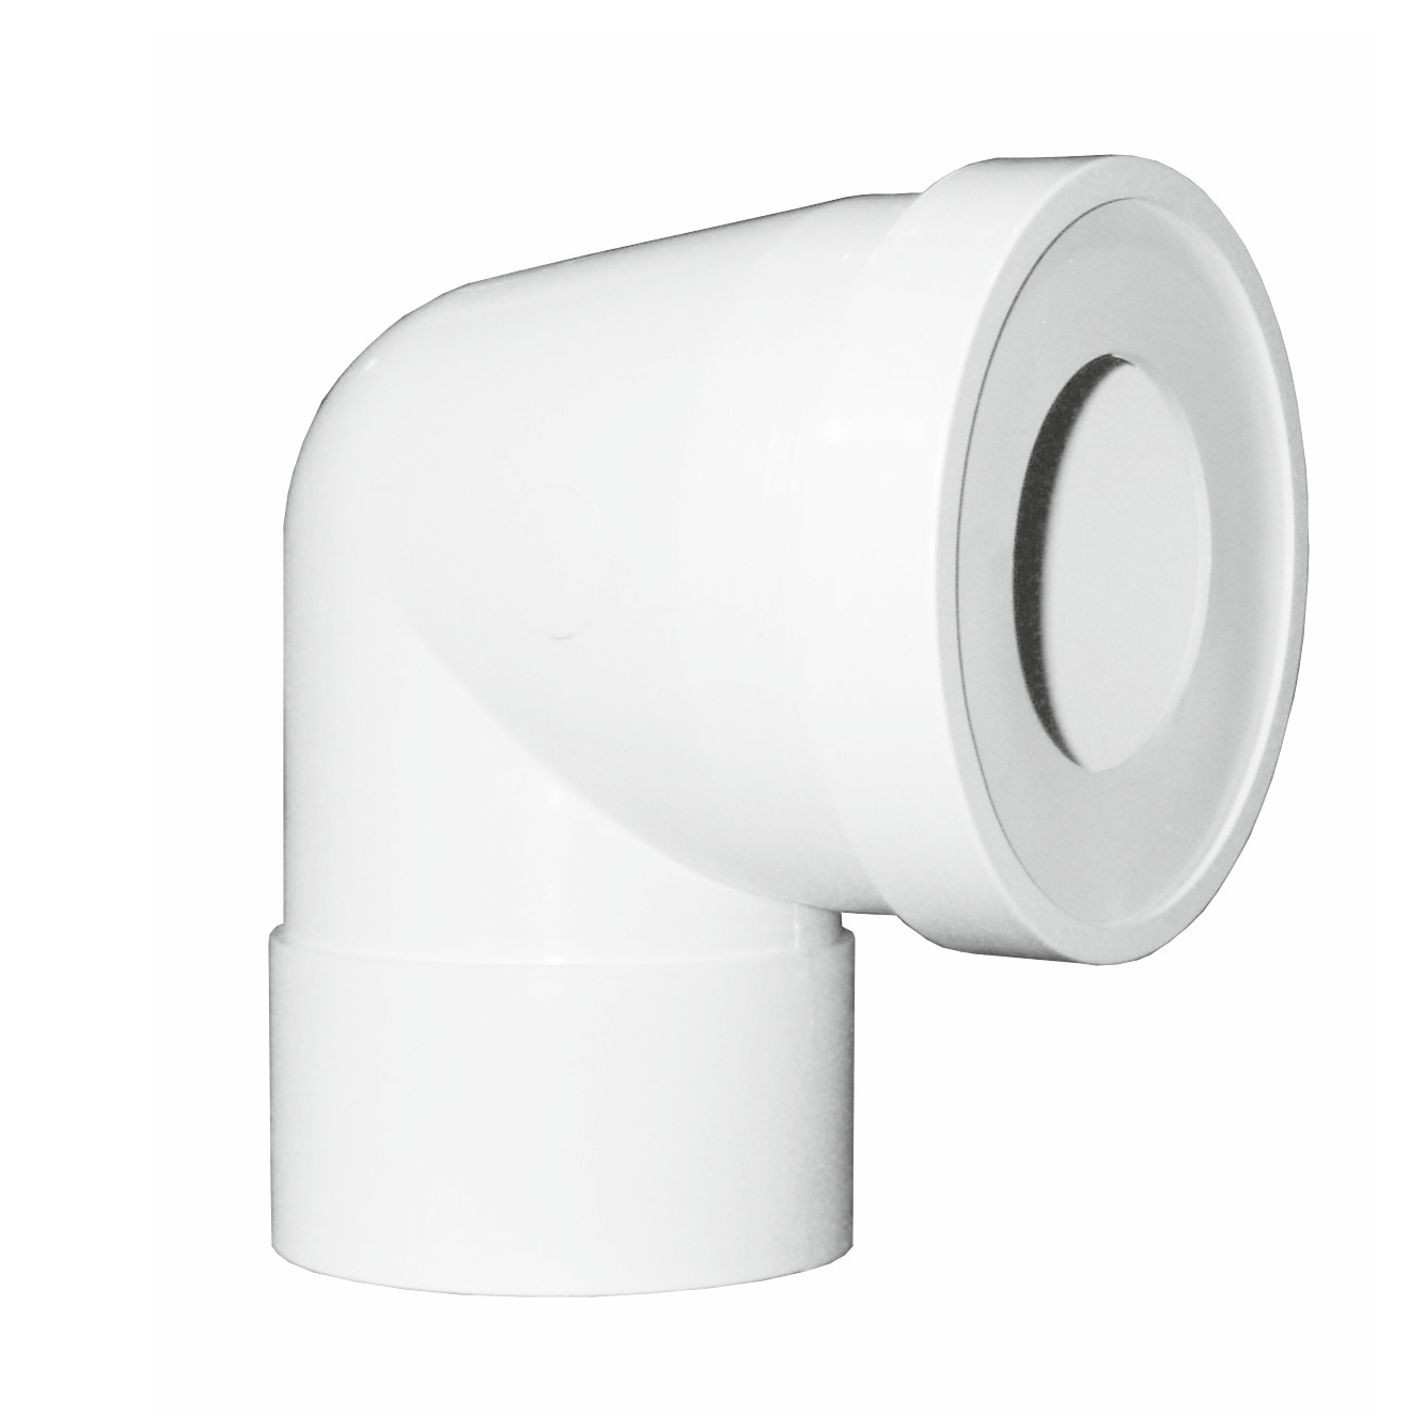 Tubo per scarico WC a gomito 90° con foro per ispezione Ø100mm 40cm bianco